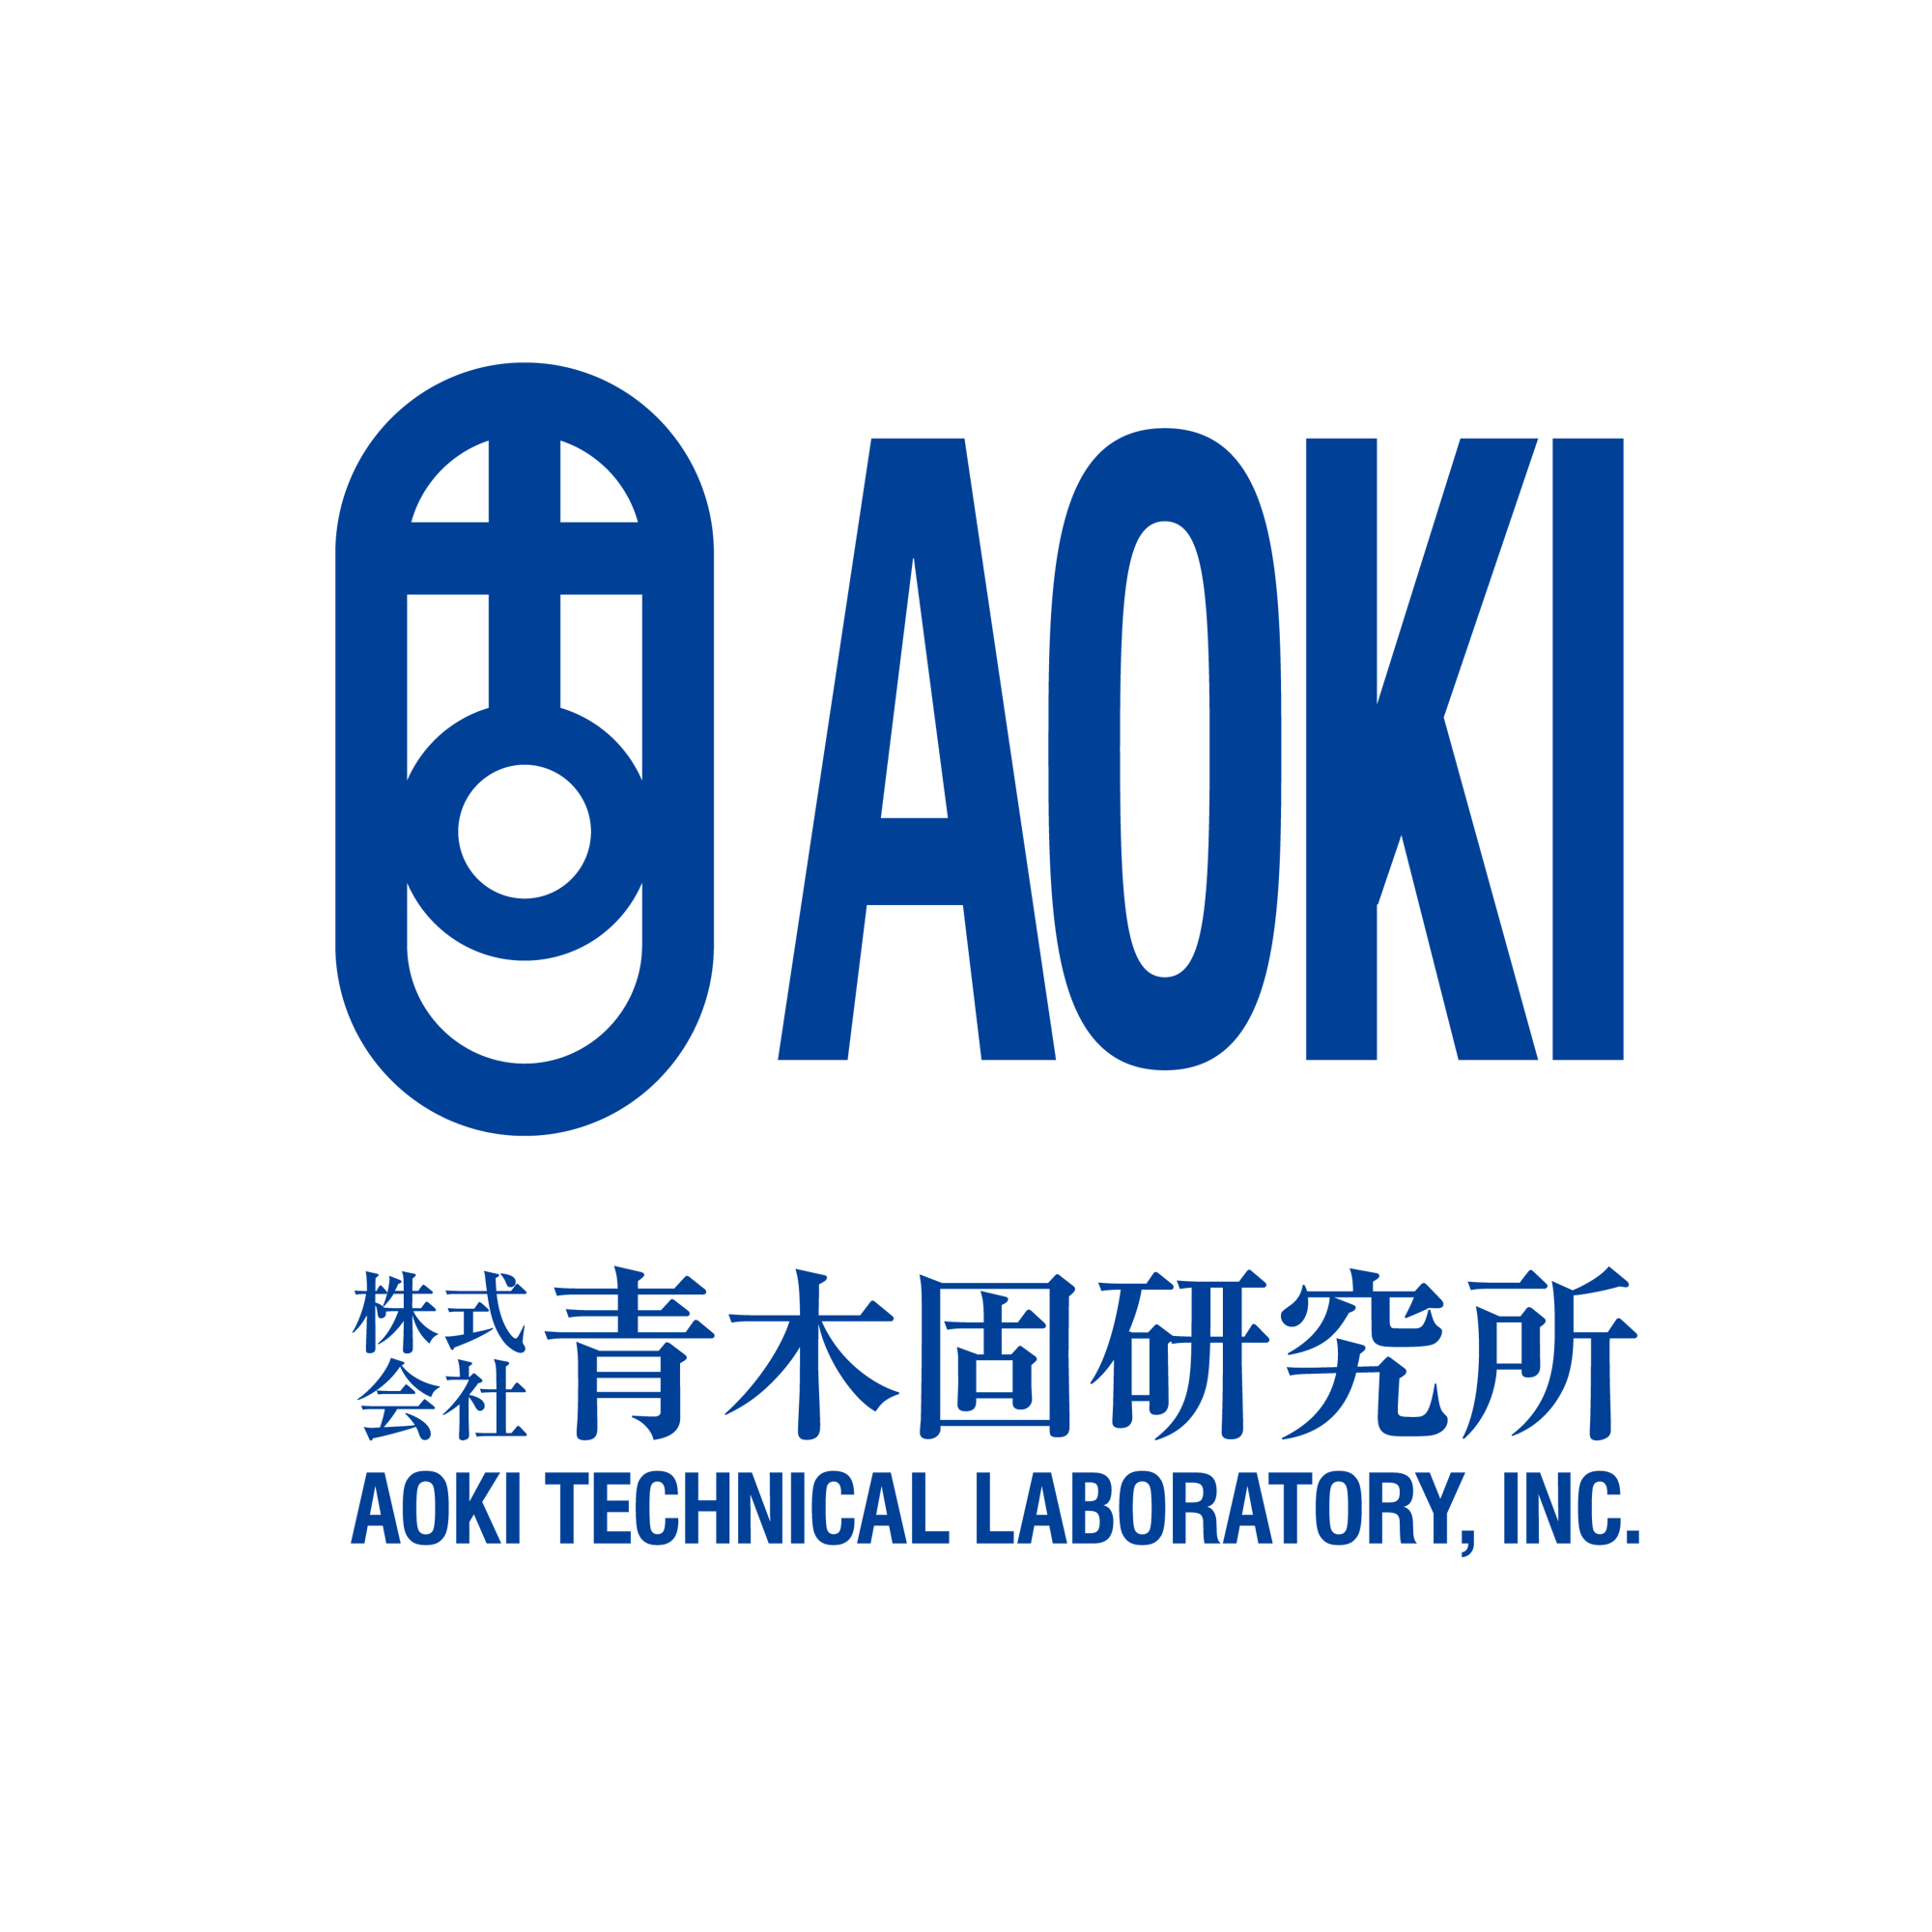 AOKI_logo-01-1